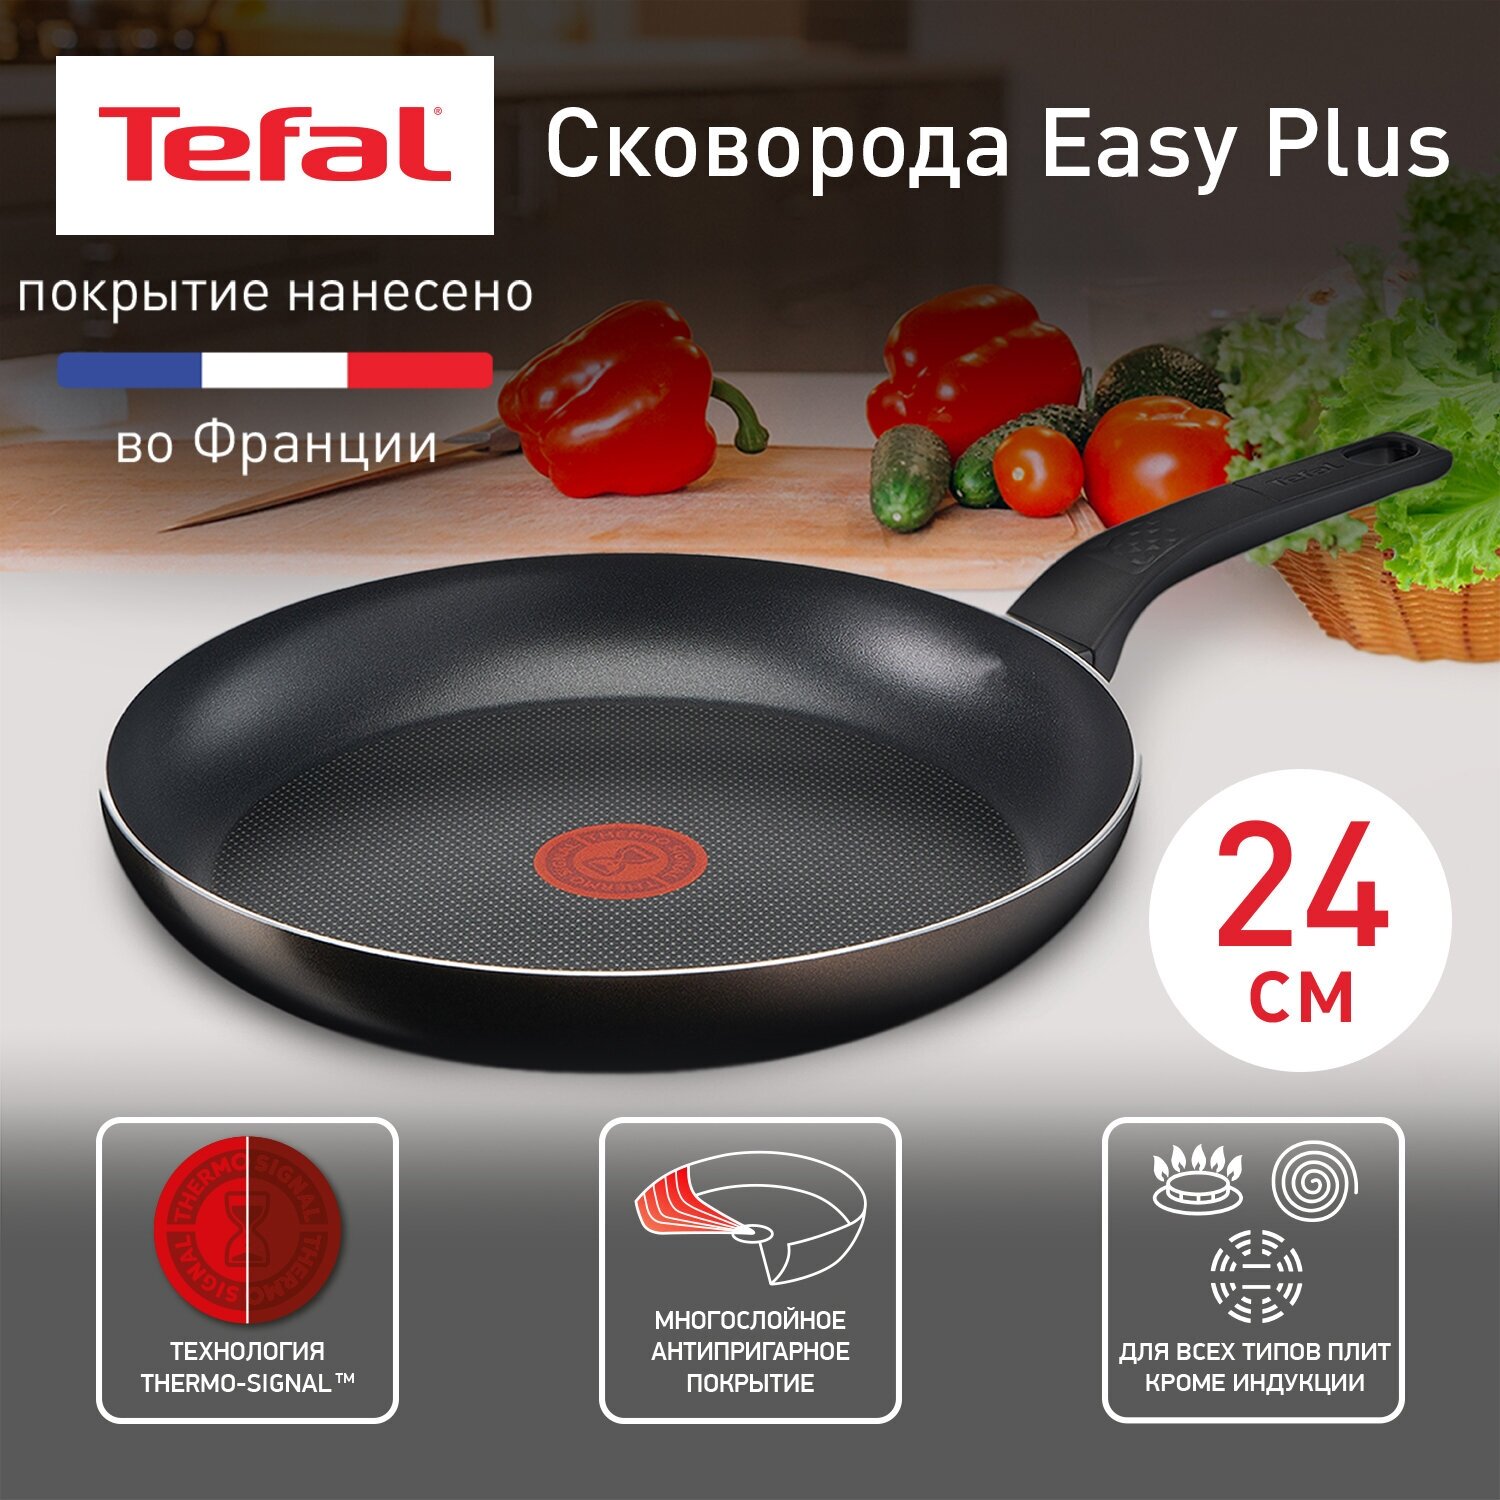 Сковорода Tefal Easy Plus 04237124 диаметр 24 см с индикатором температуры с антипригарным покрытием для газовых электрических плит